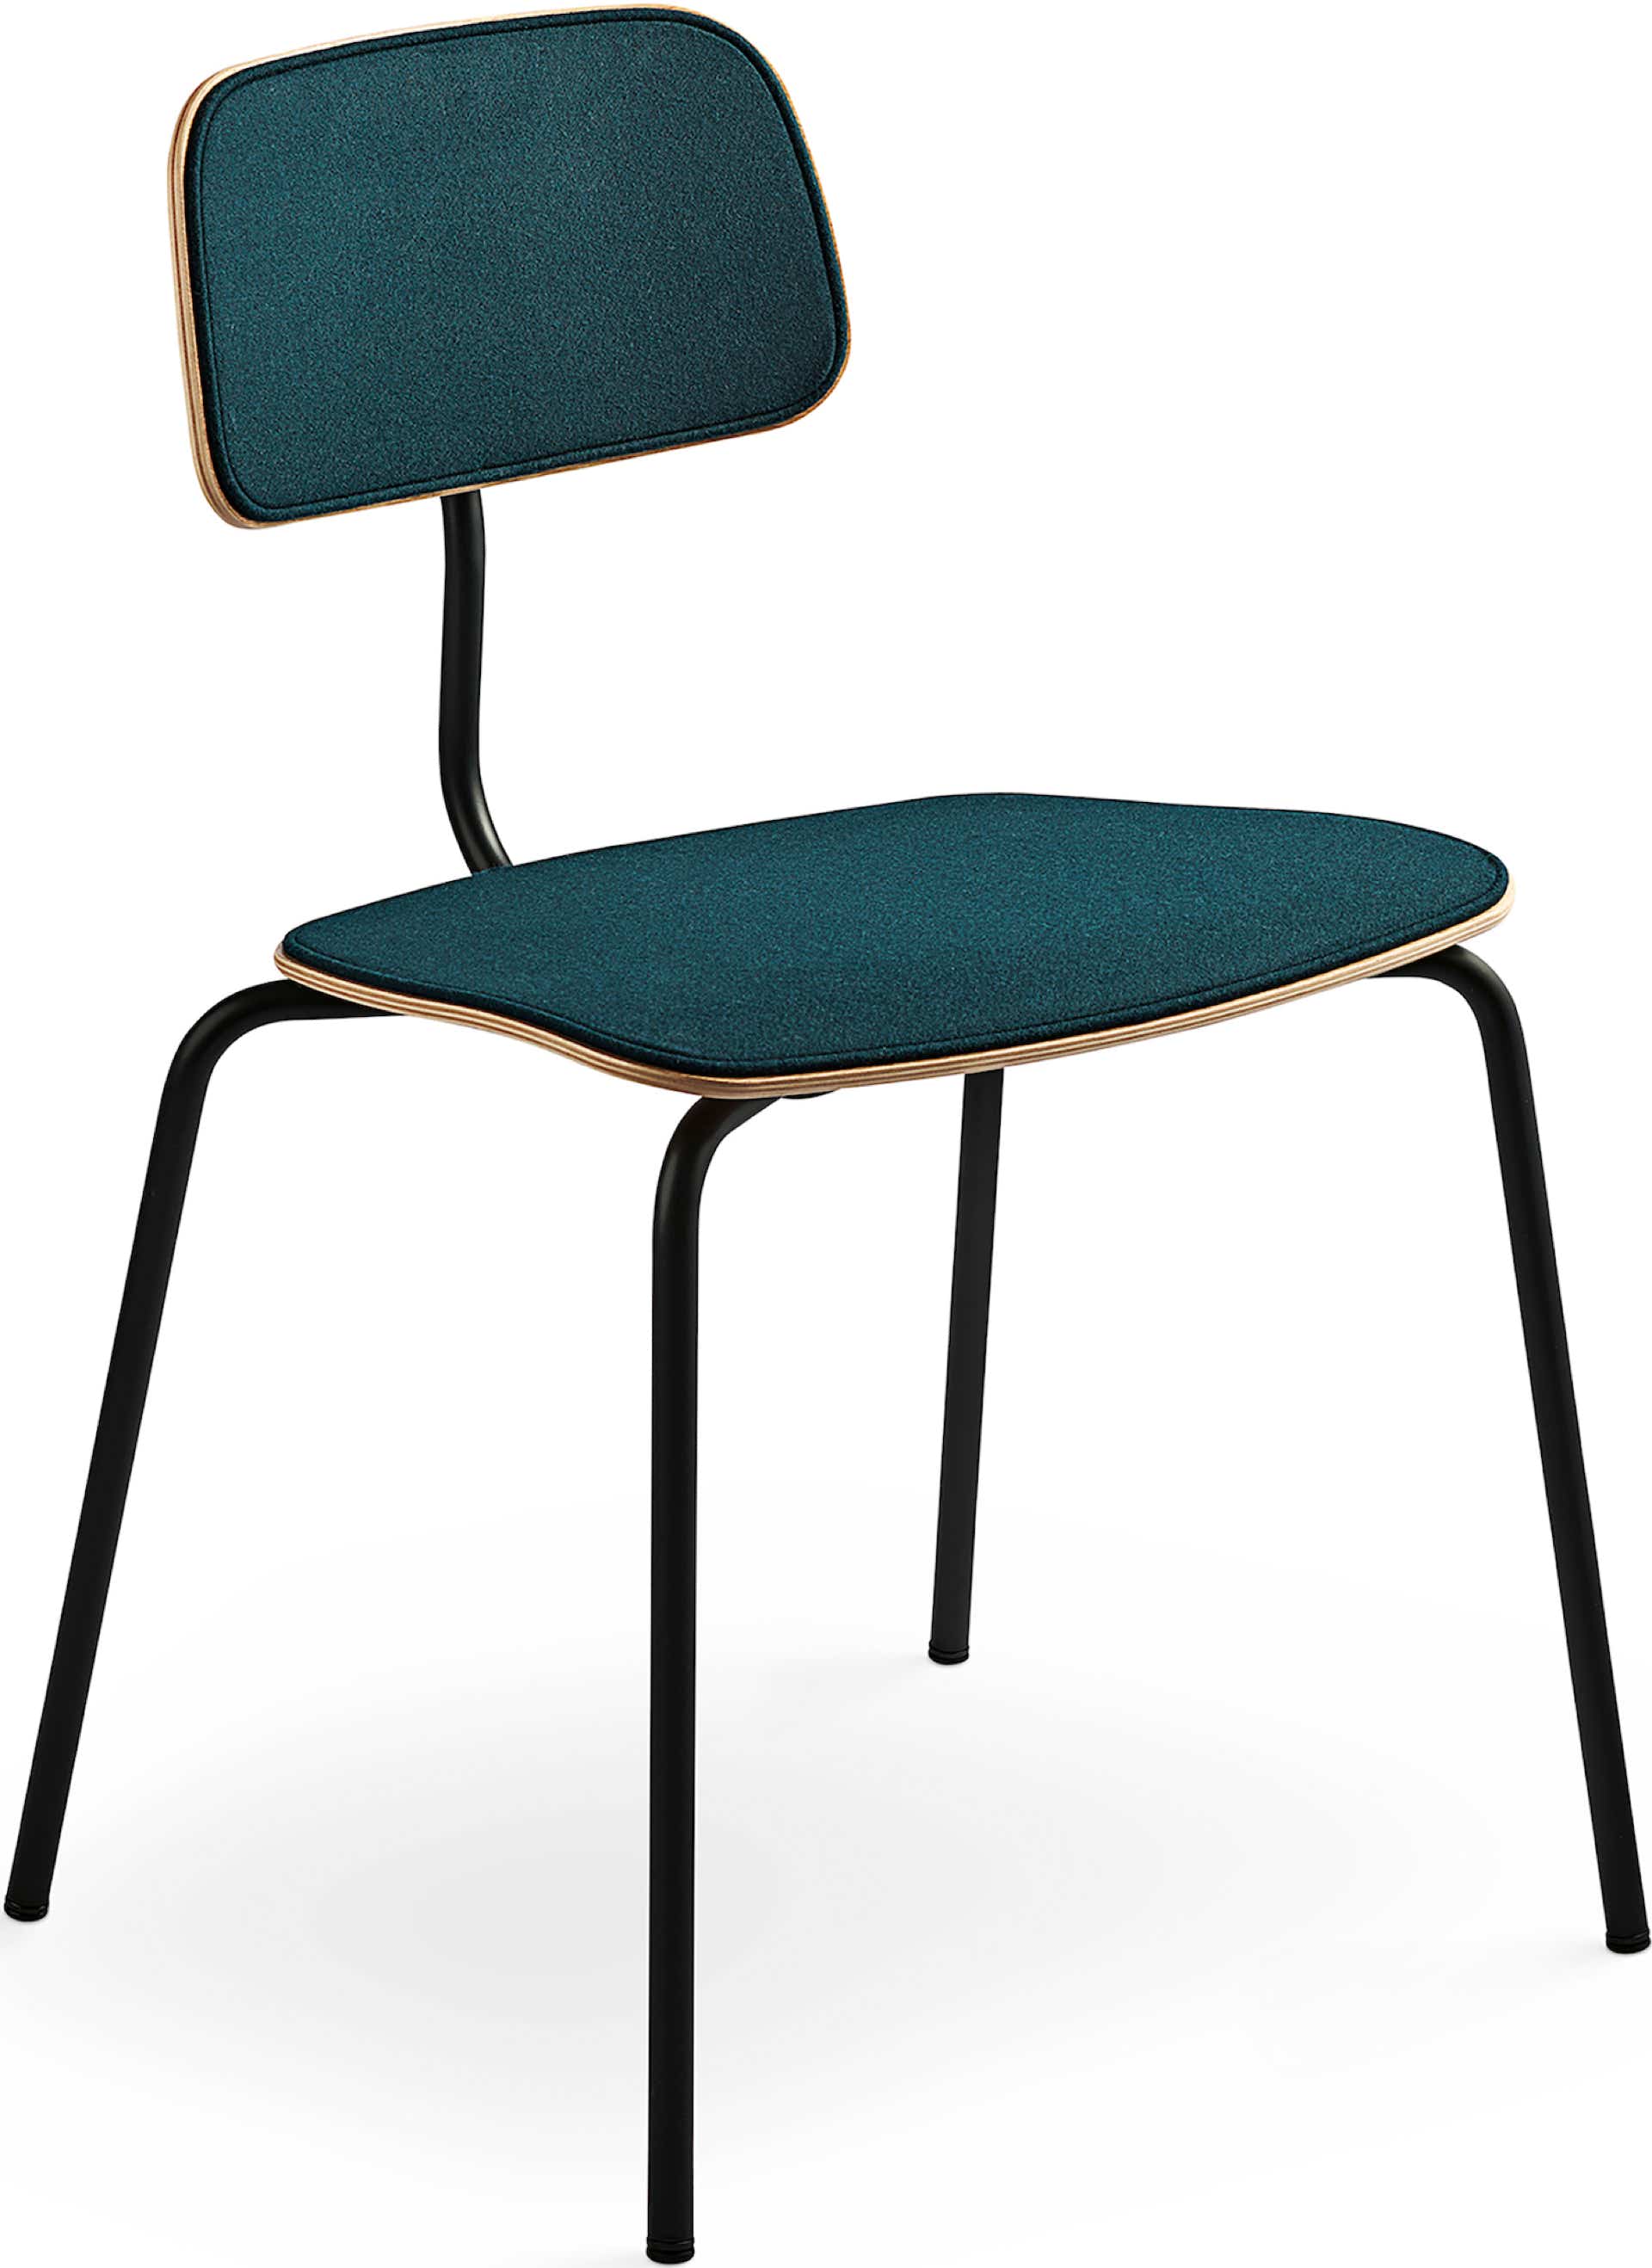 Kevi 2060 Chair Jørgen Rasmussen, 1958 / 2016